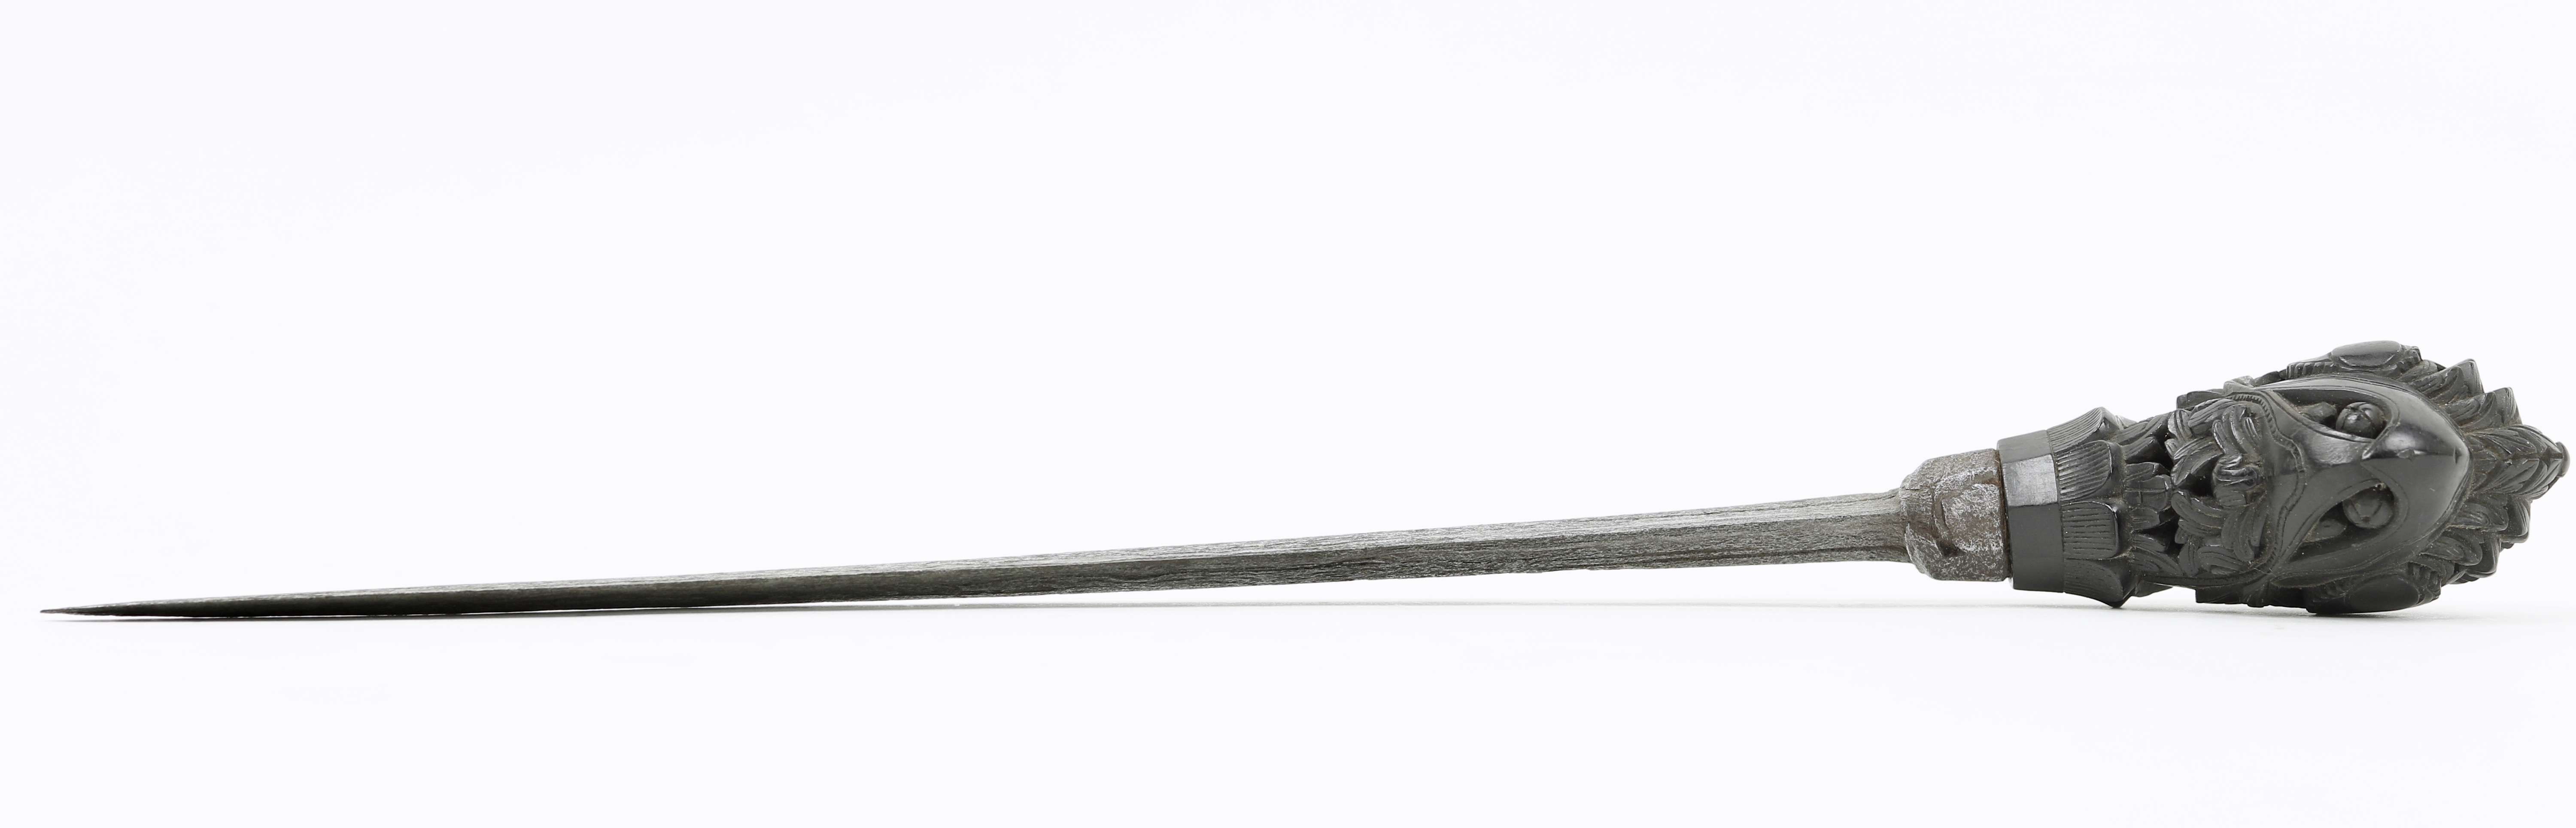 Sewar dagger from Sumatra